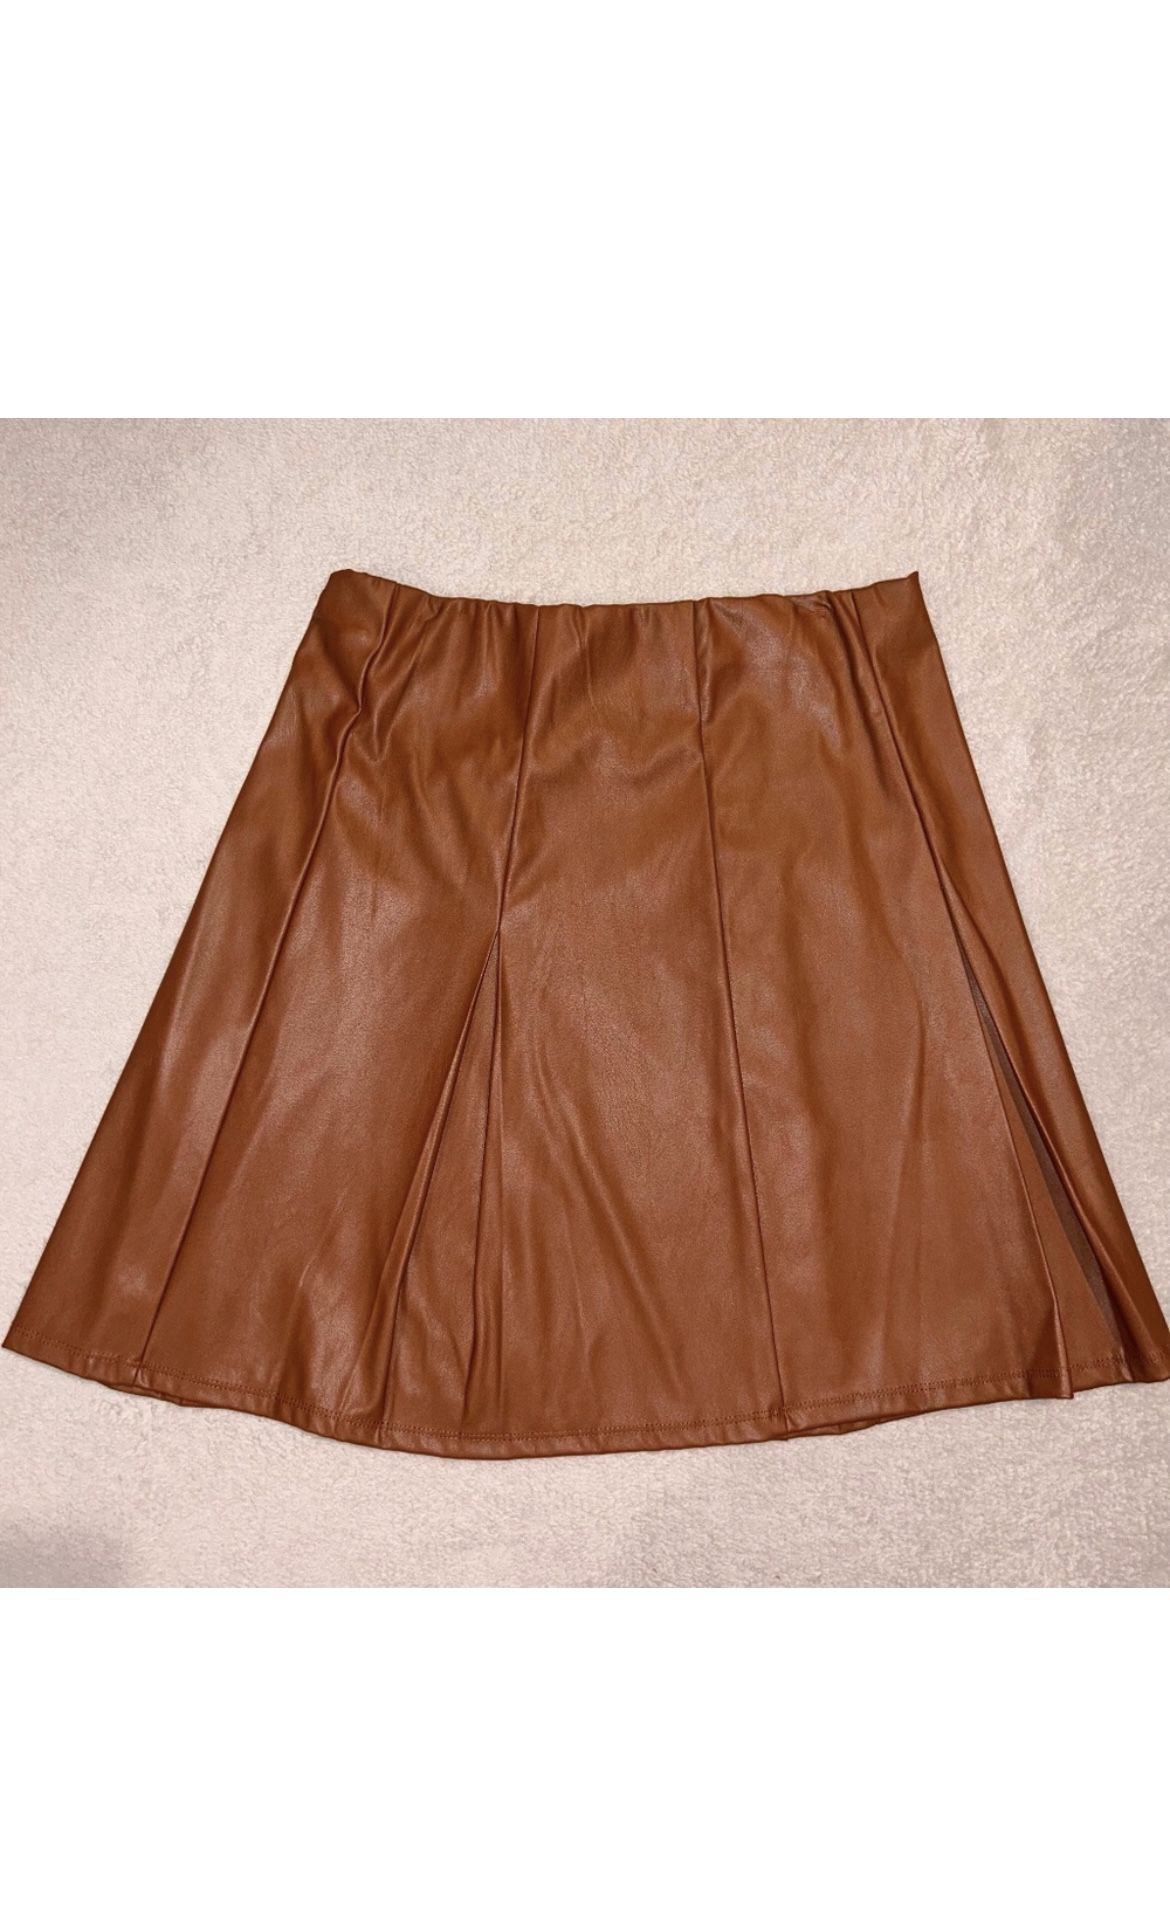 Versatile Brown Skater Skirt